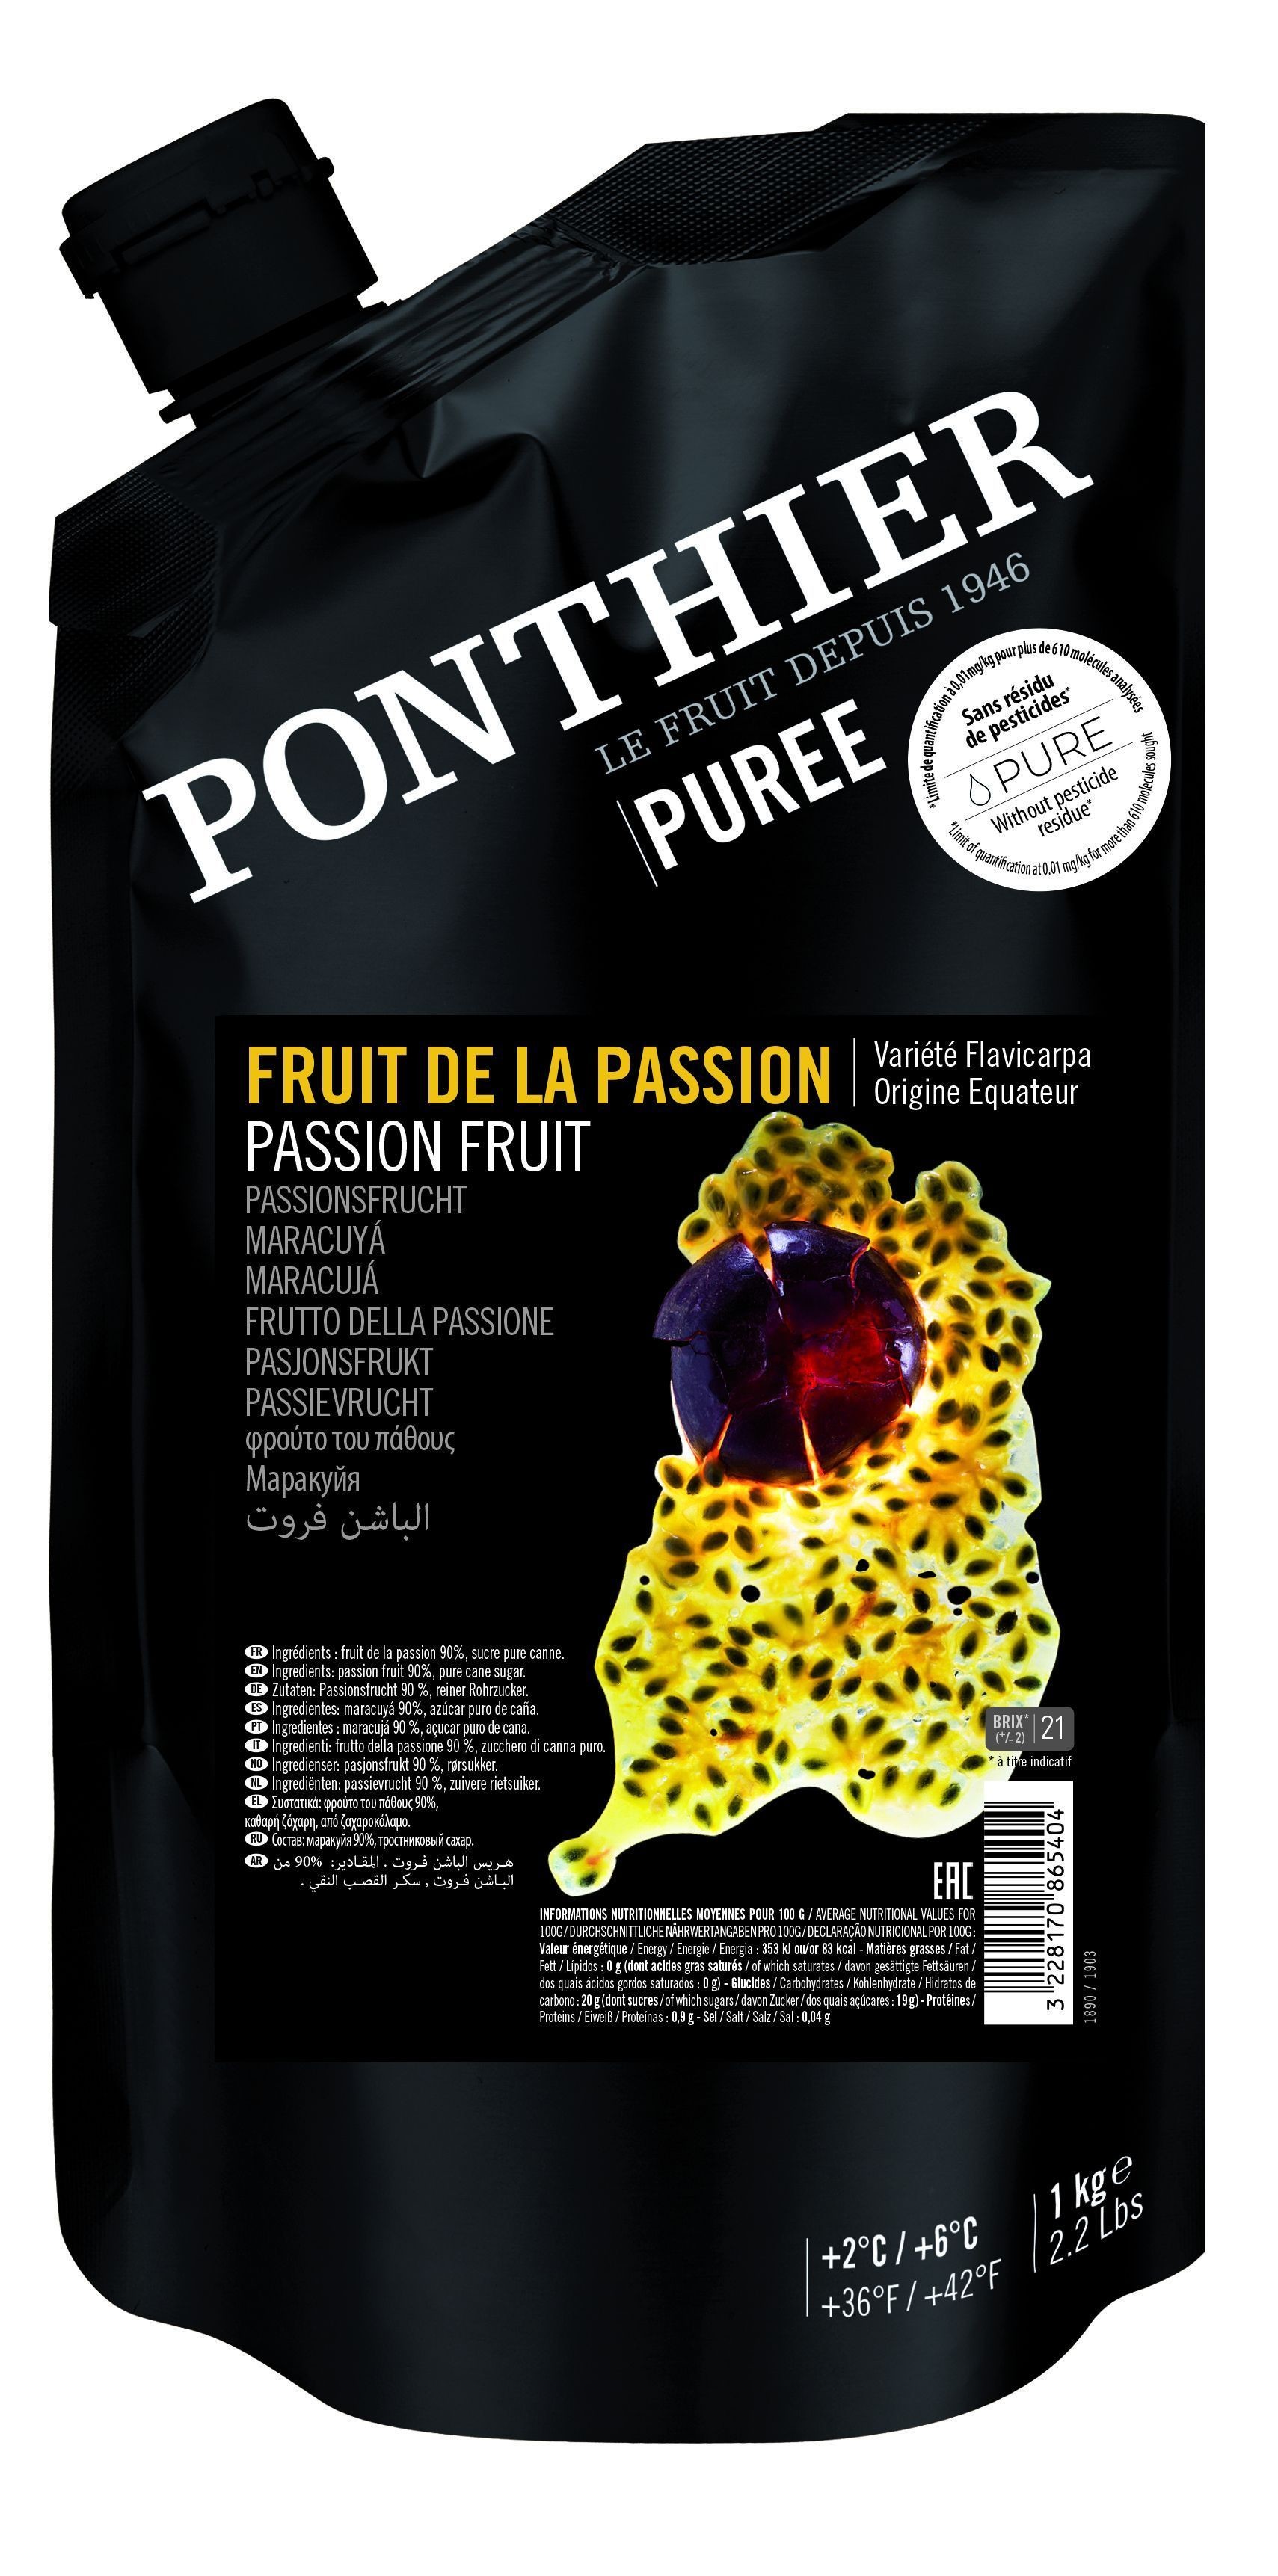 Ponthier Purées de Fruit Fruit de la Passion 1kg